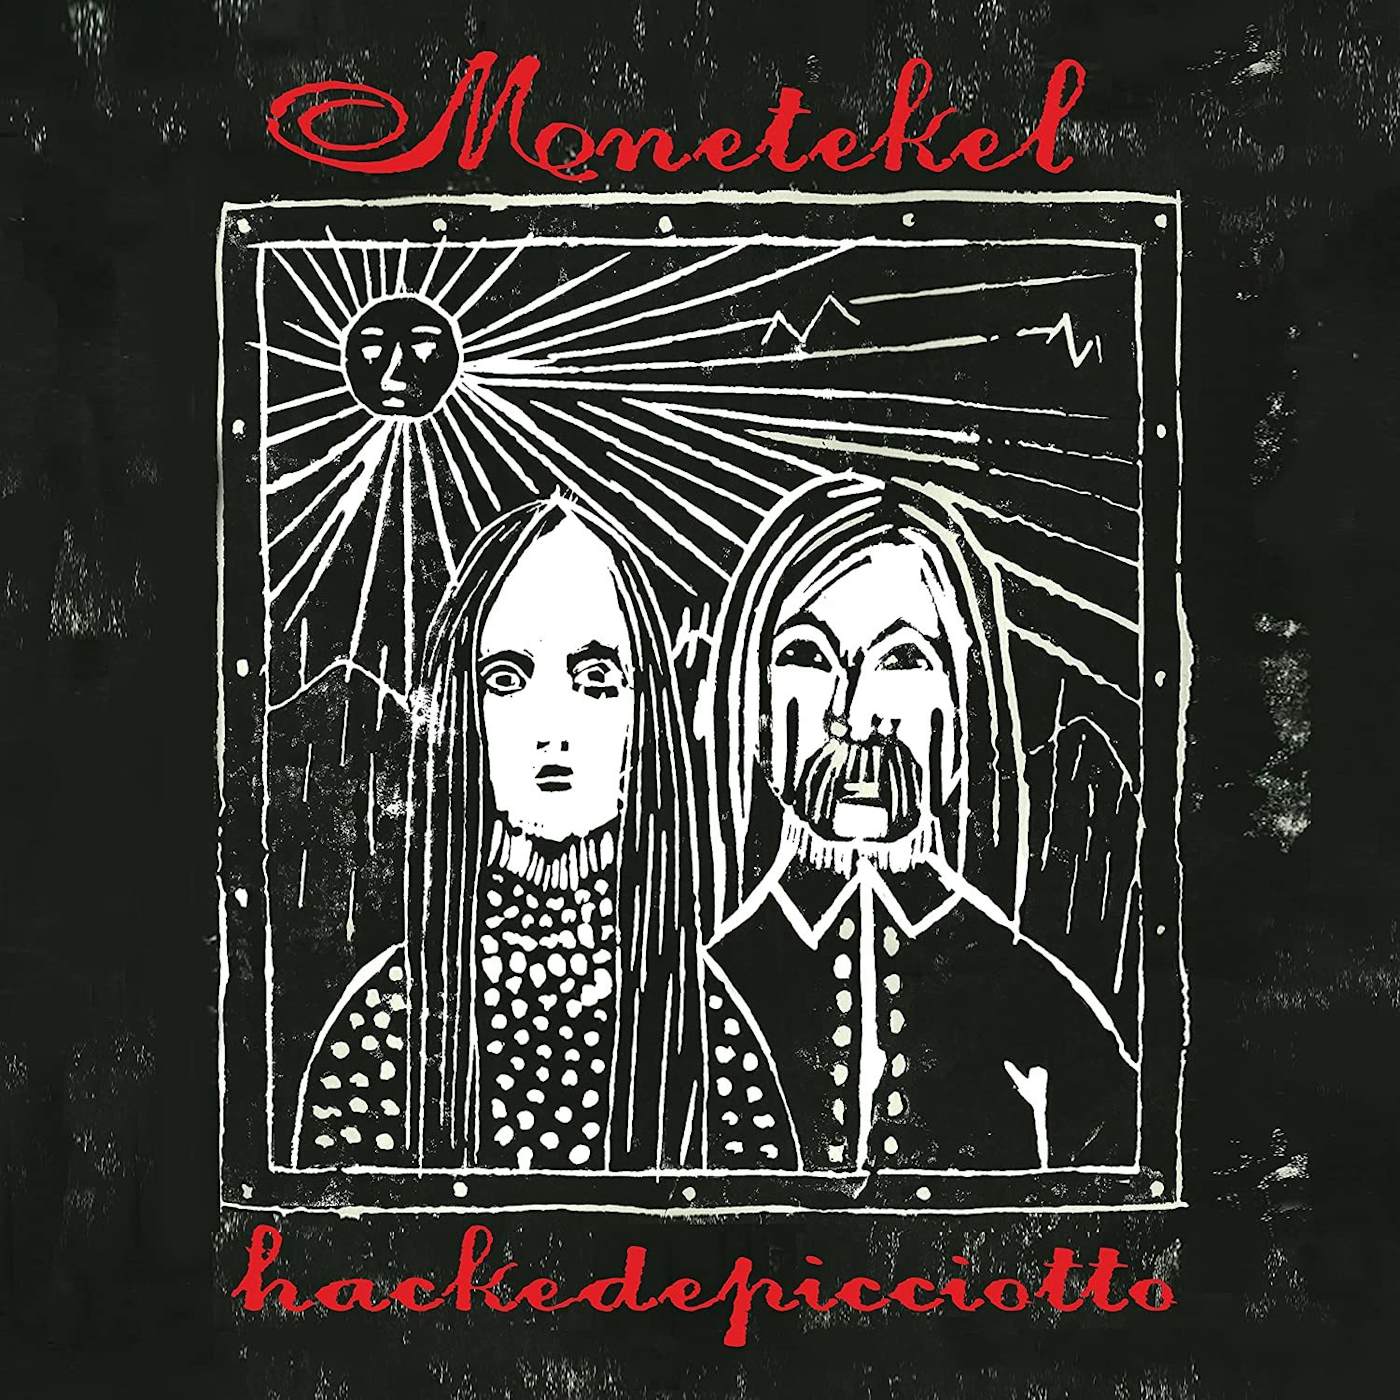 hackedepicciotto Menetekel Vinyl Record